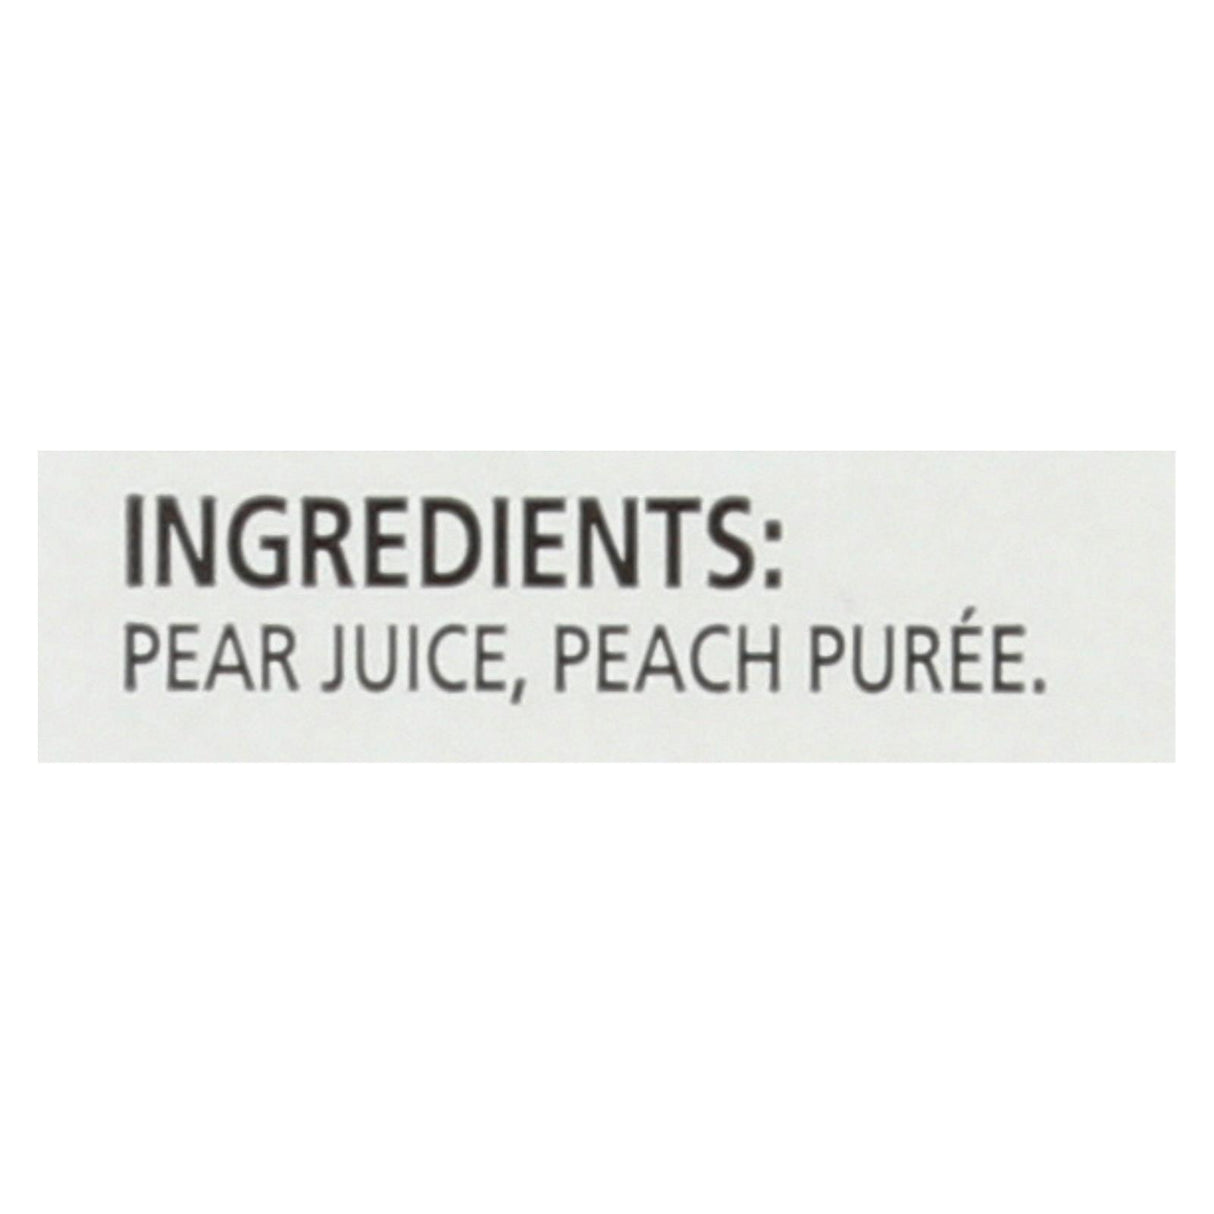 Ceres Juices Juice - Peach - Case Of 12 - 33.8 Fl Oz